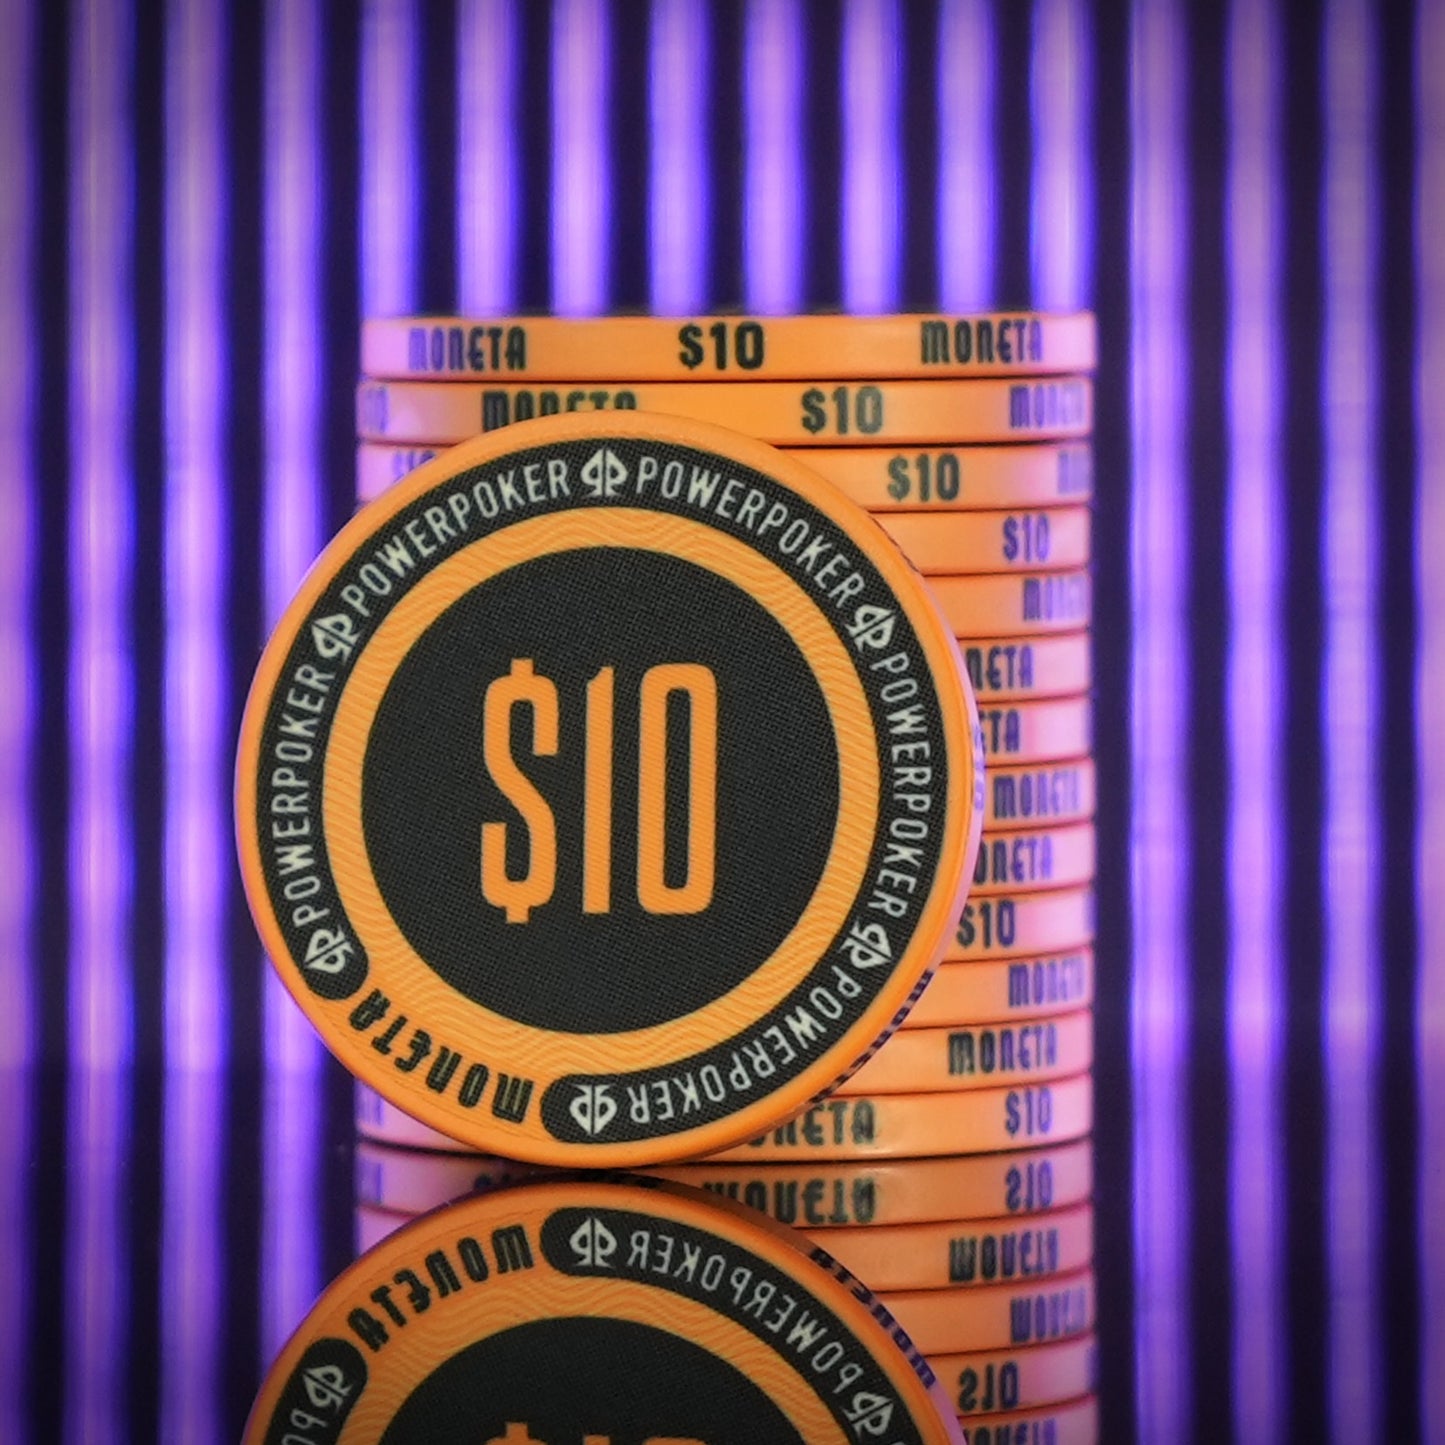 Moneta "Las Vegas" 1000 - Ceramic Poker Chips (25 pcs.)